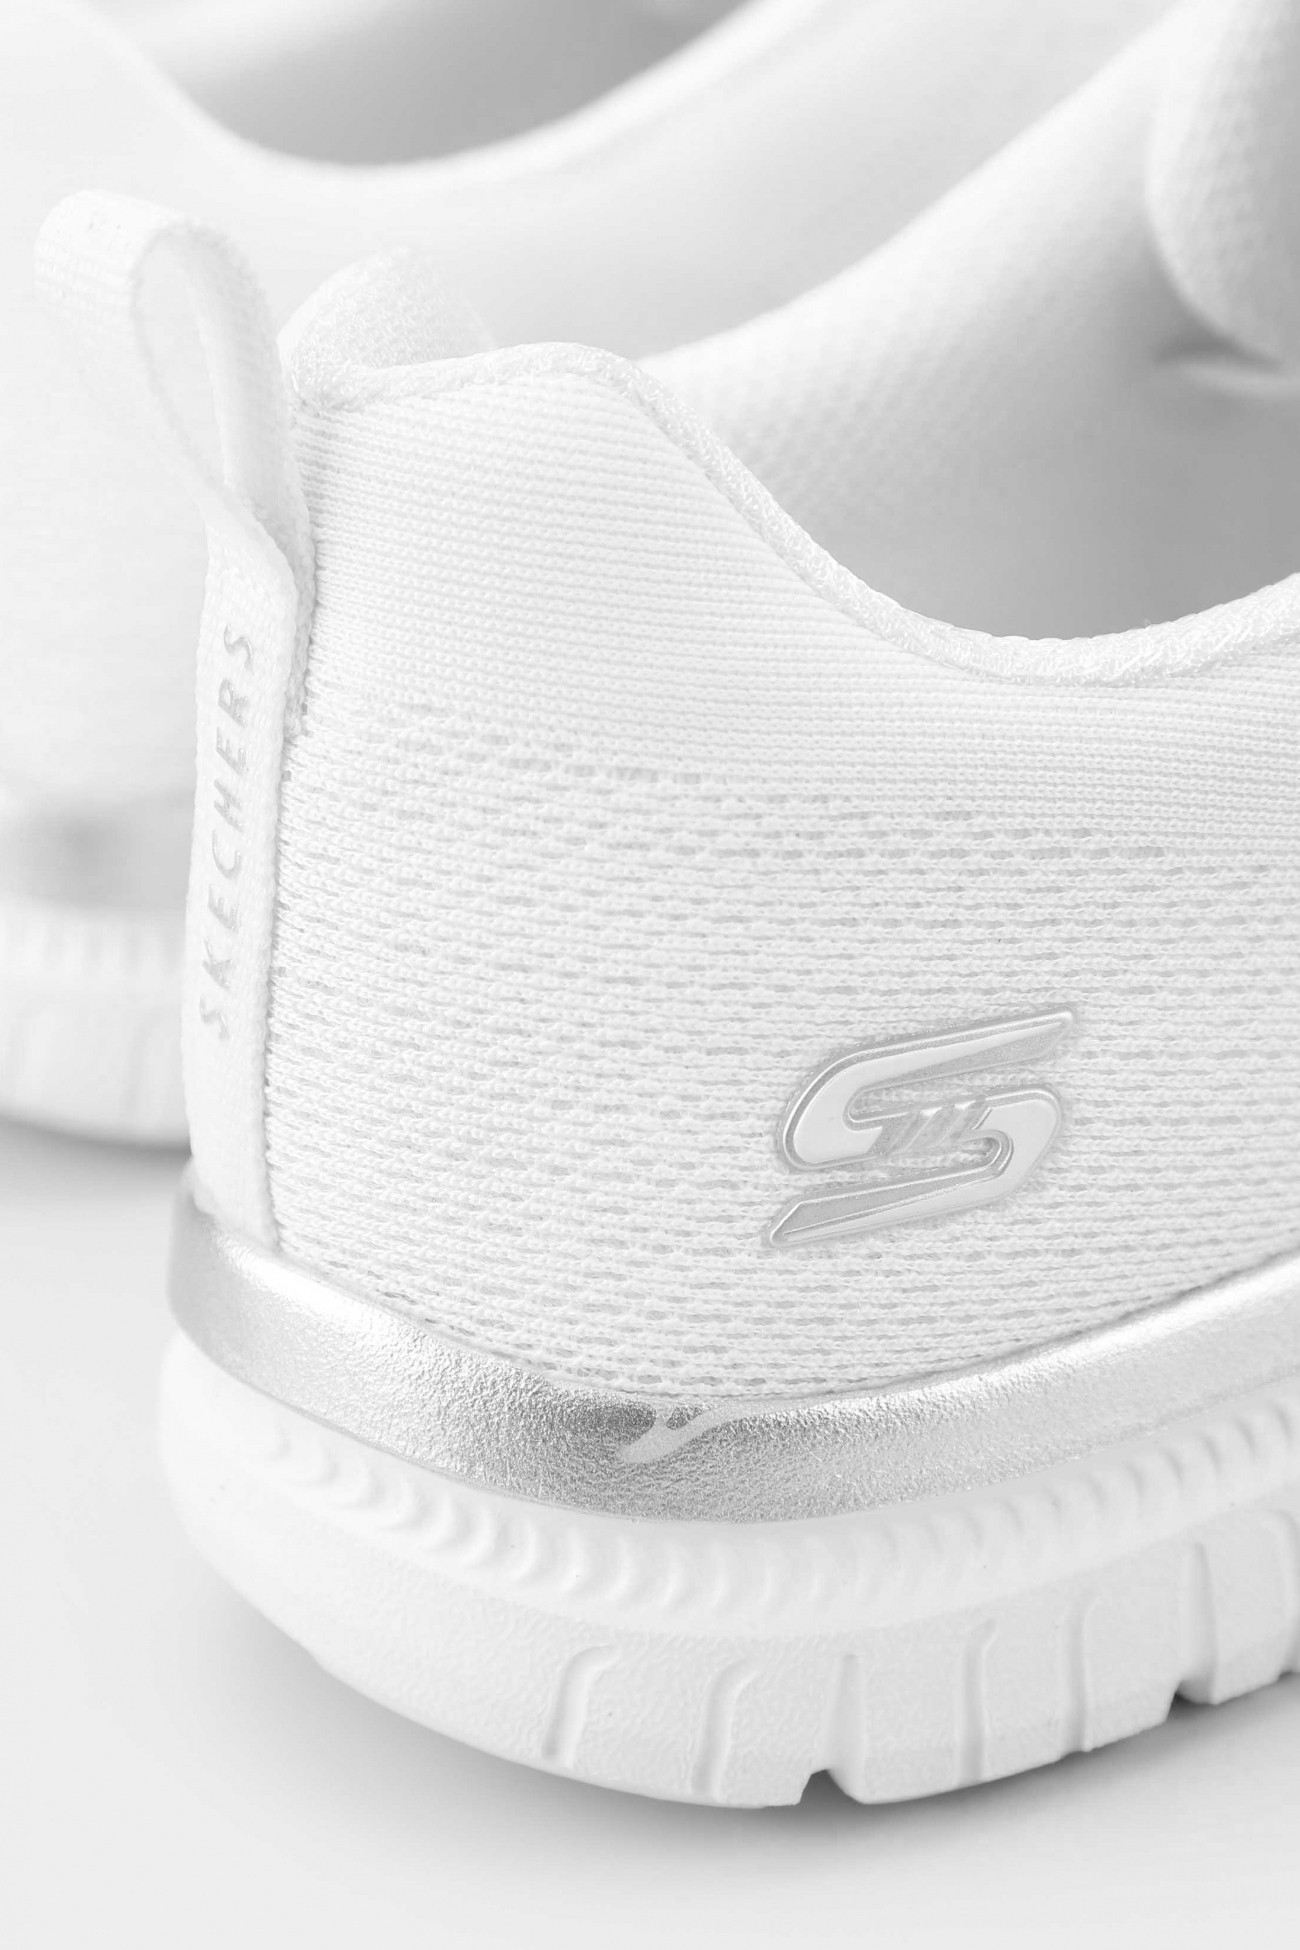  Кросівки жіночі Skechers Virtue білі 104413 WSL изображение 6